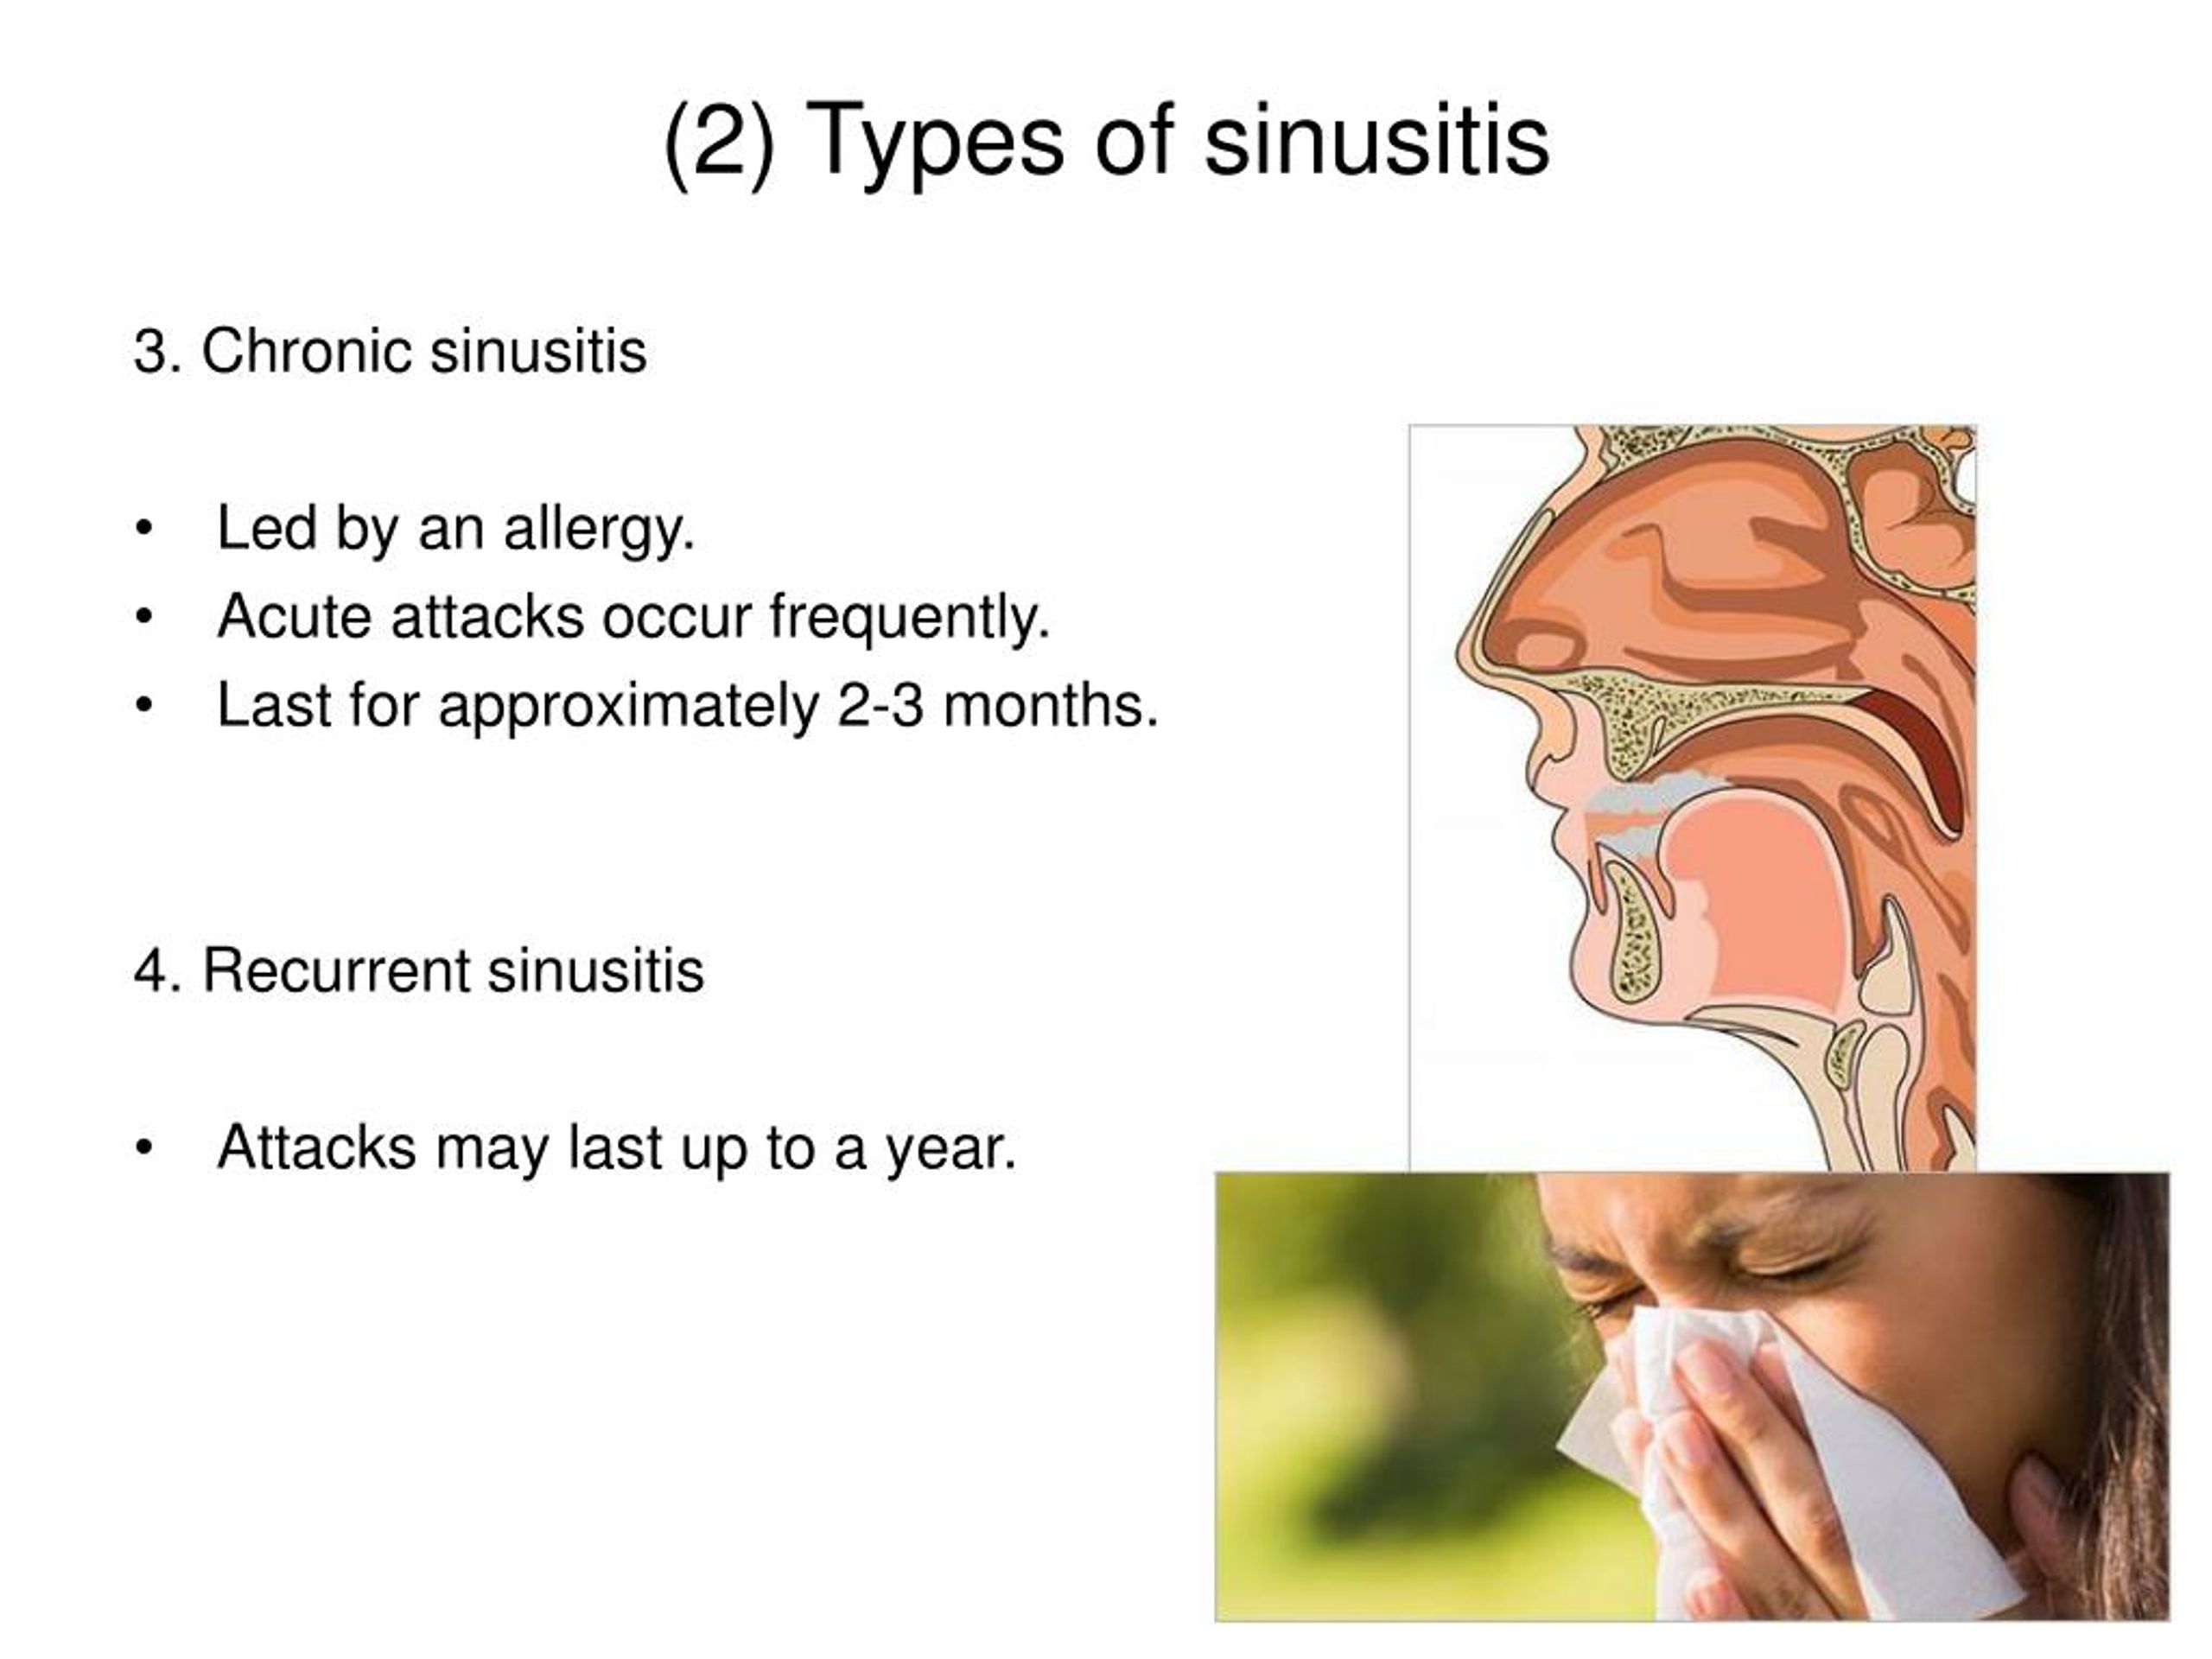 2) Types of sinusitis.